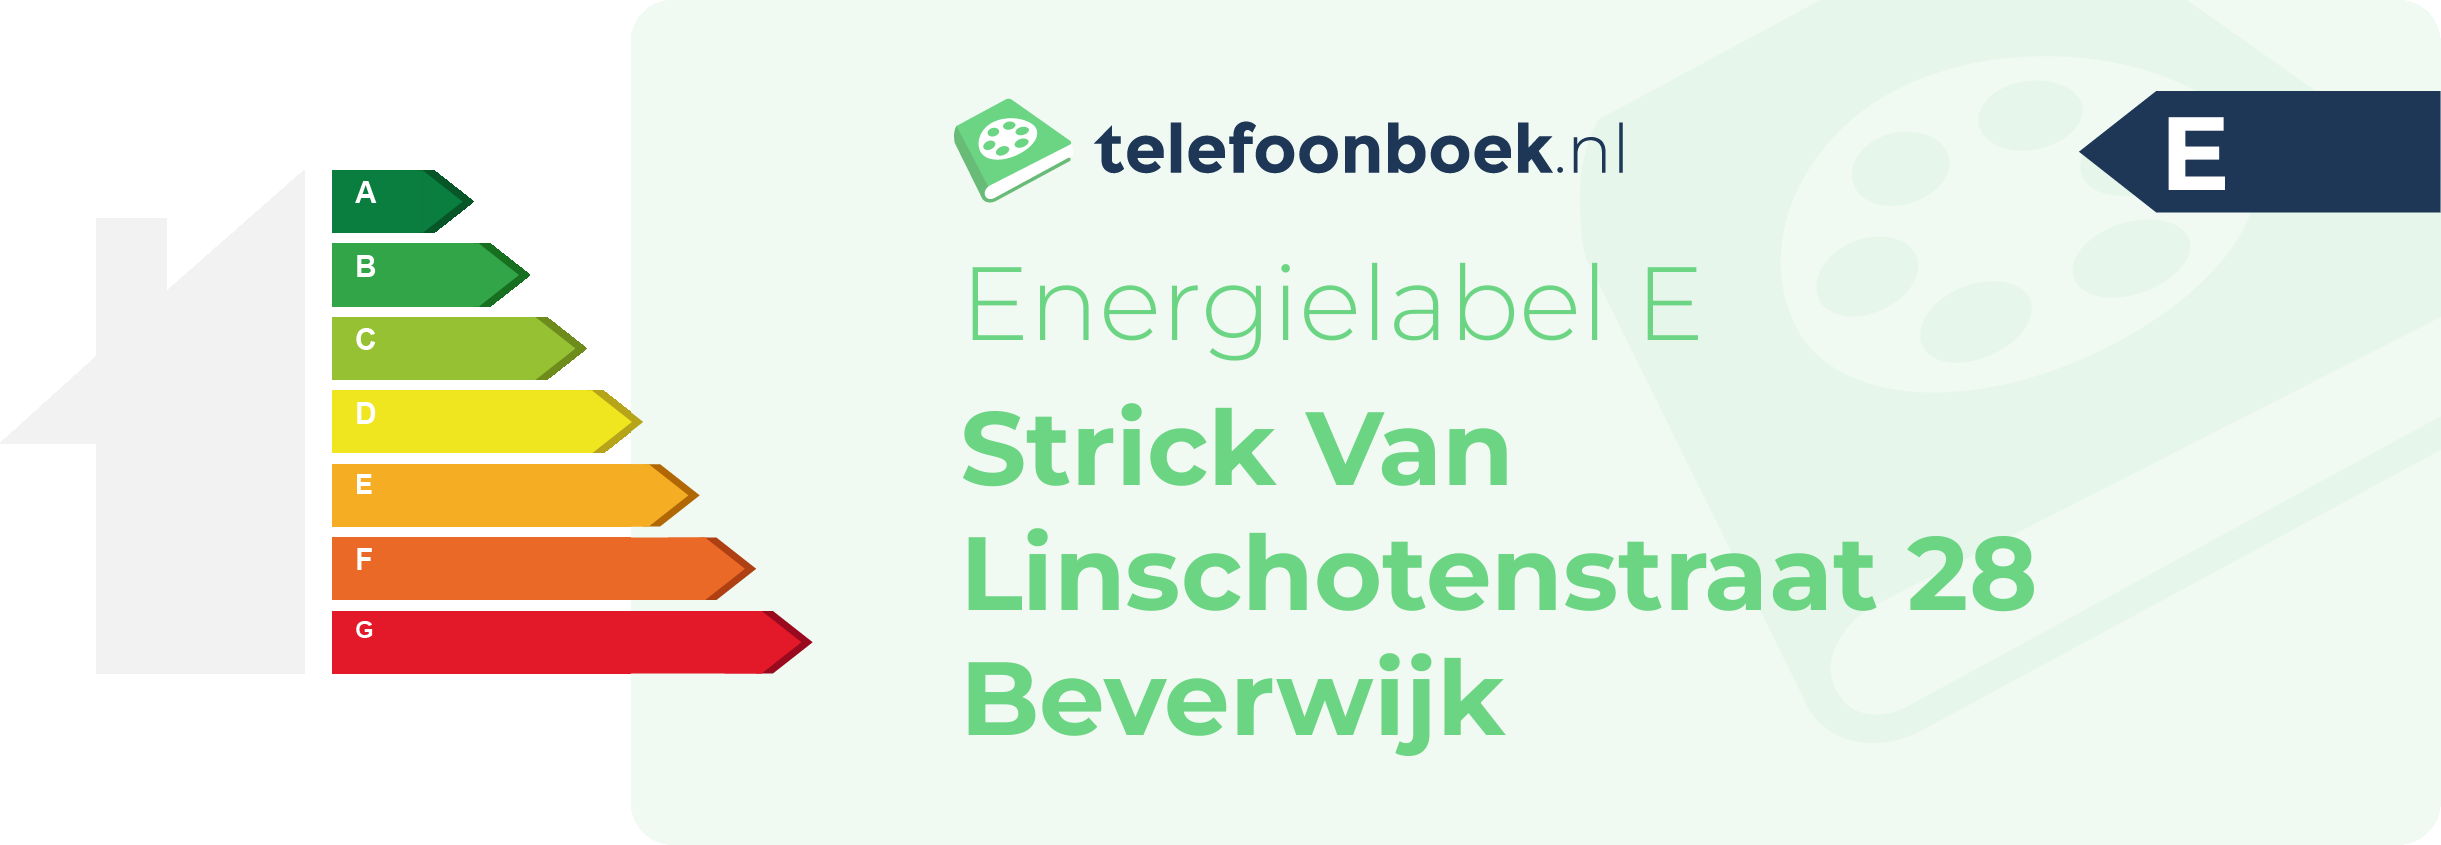 Energielabel Strick Van Linschotenstraat 28 Beverwijk